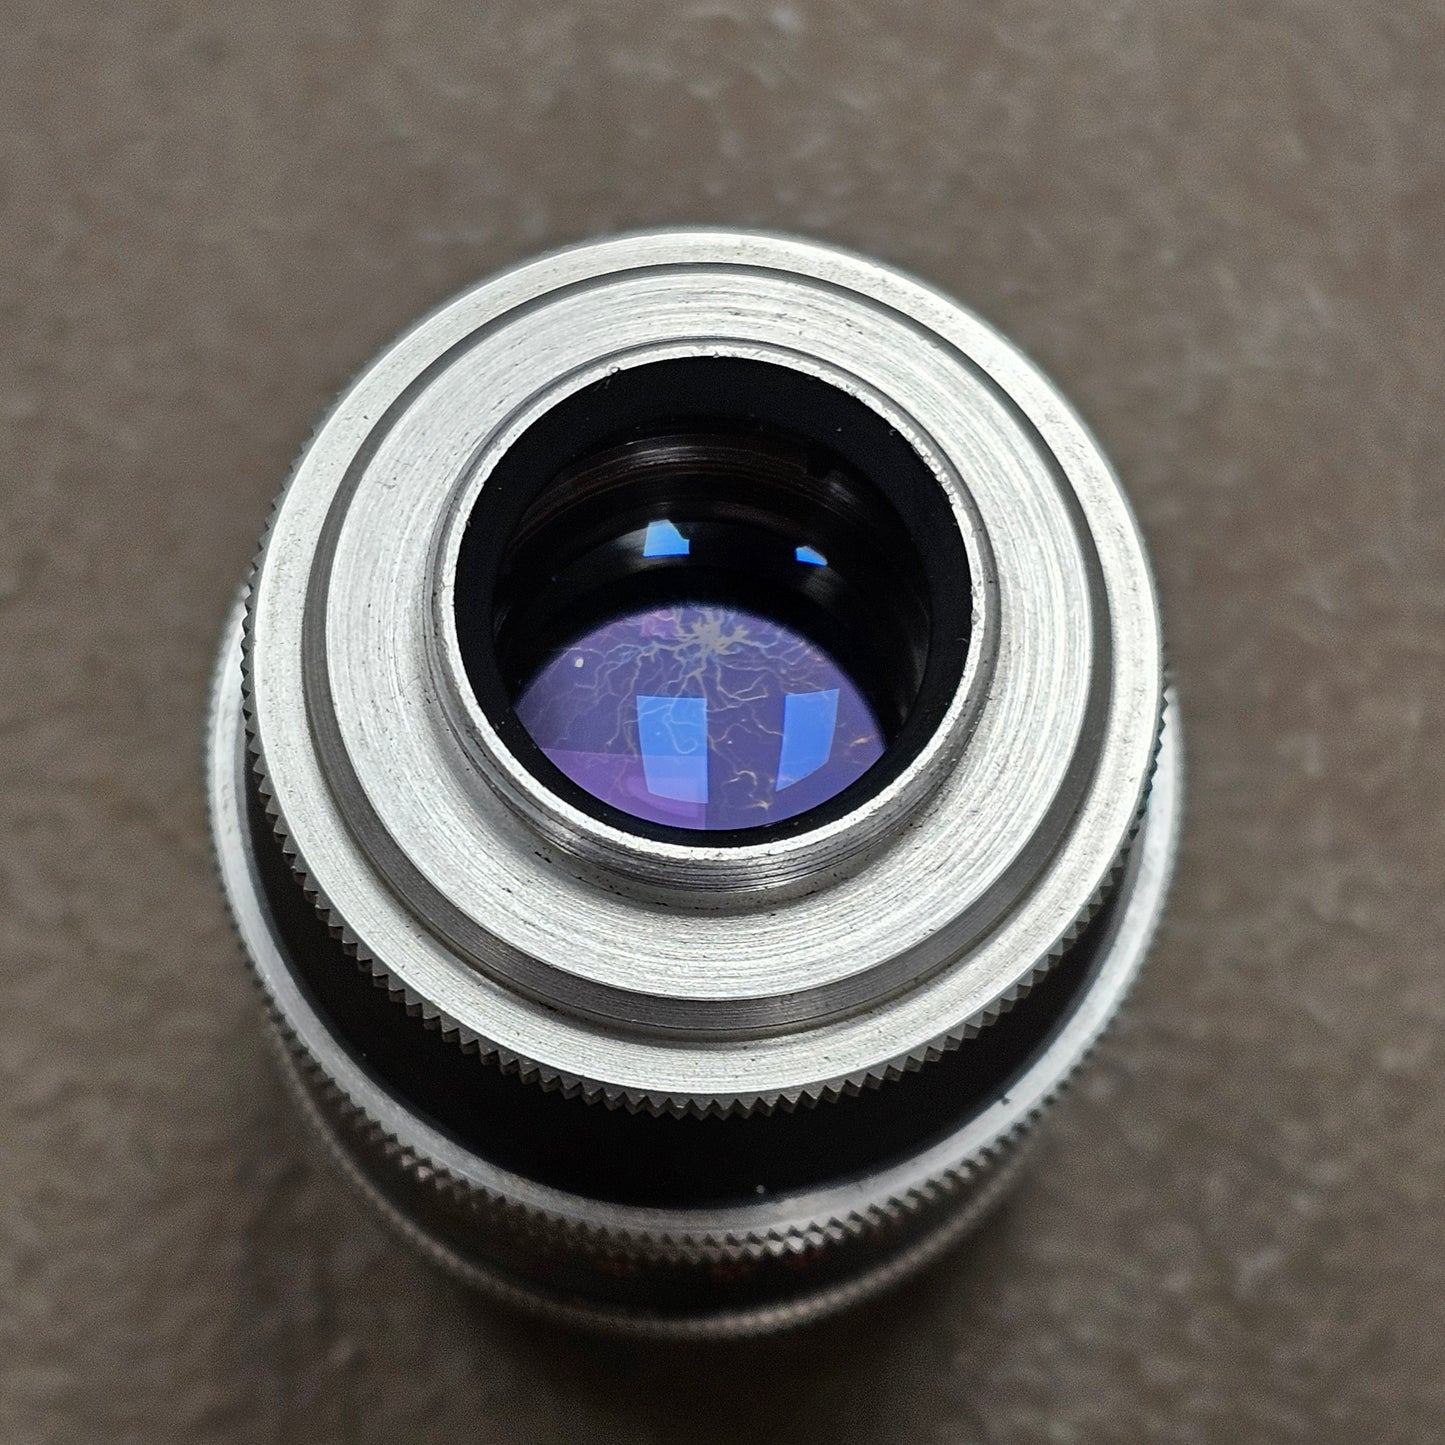 Switar 75mm f1.9 C-Mount Lens S# 976439